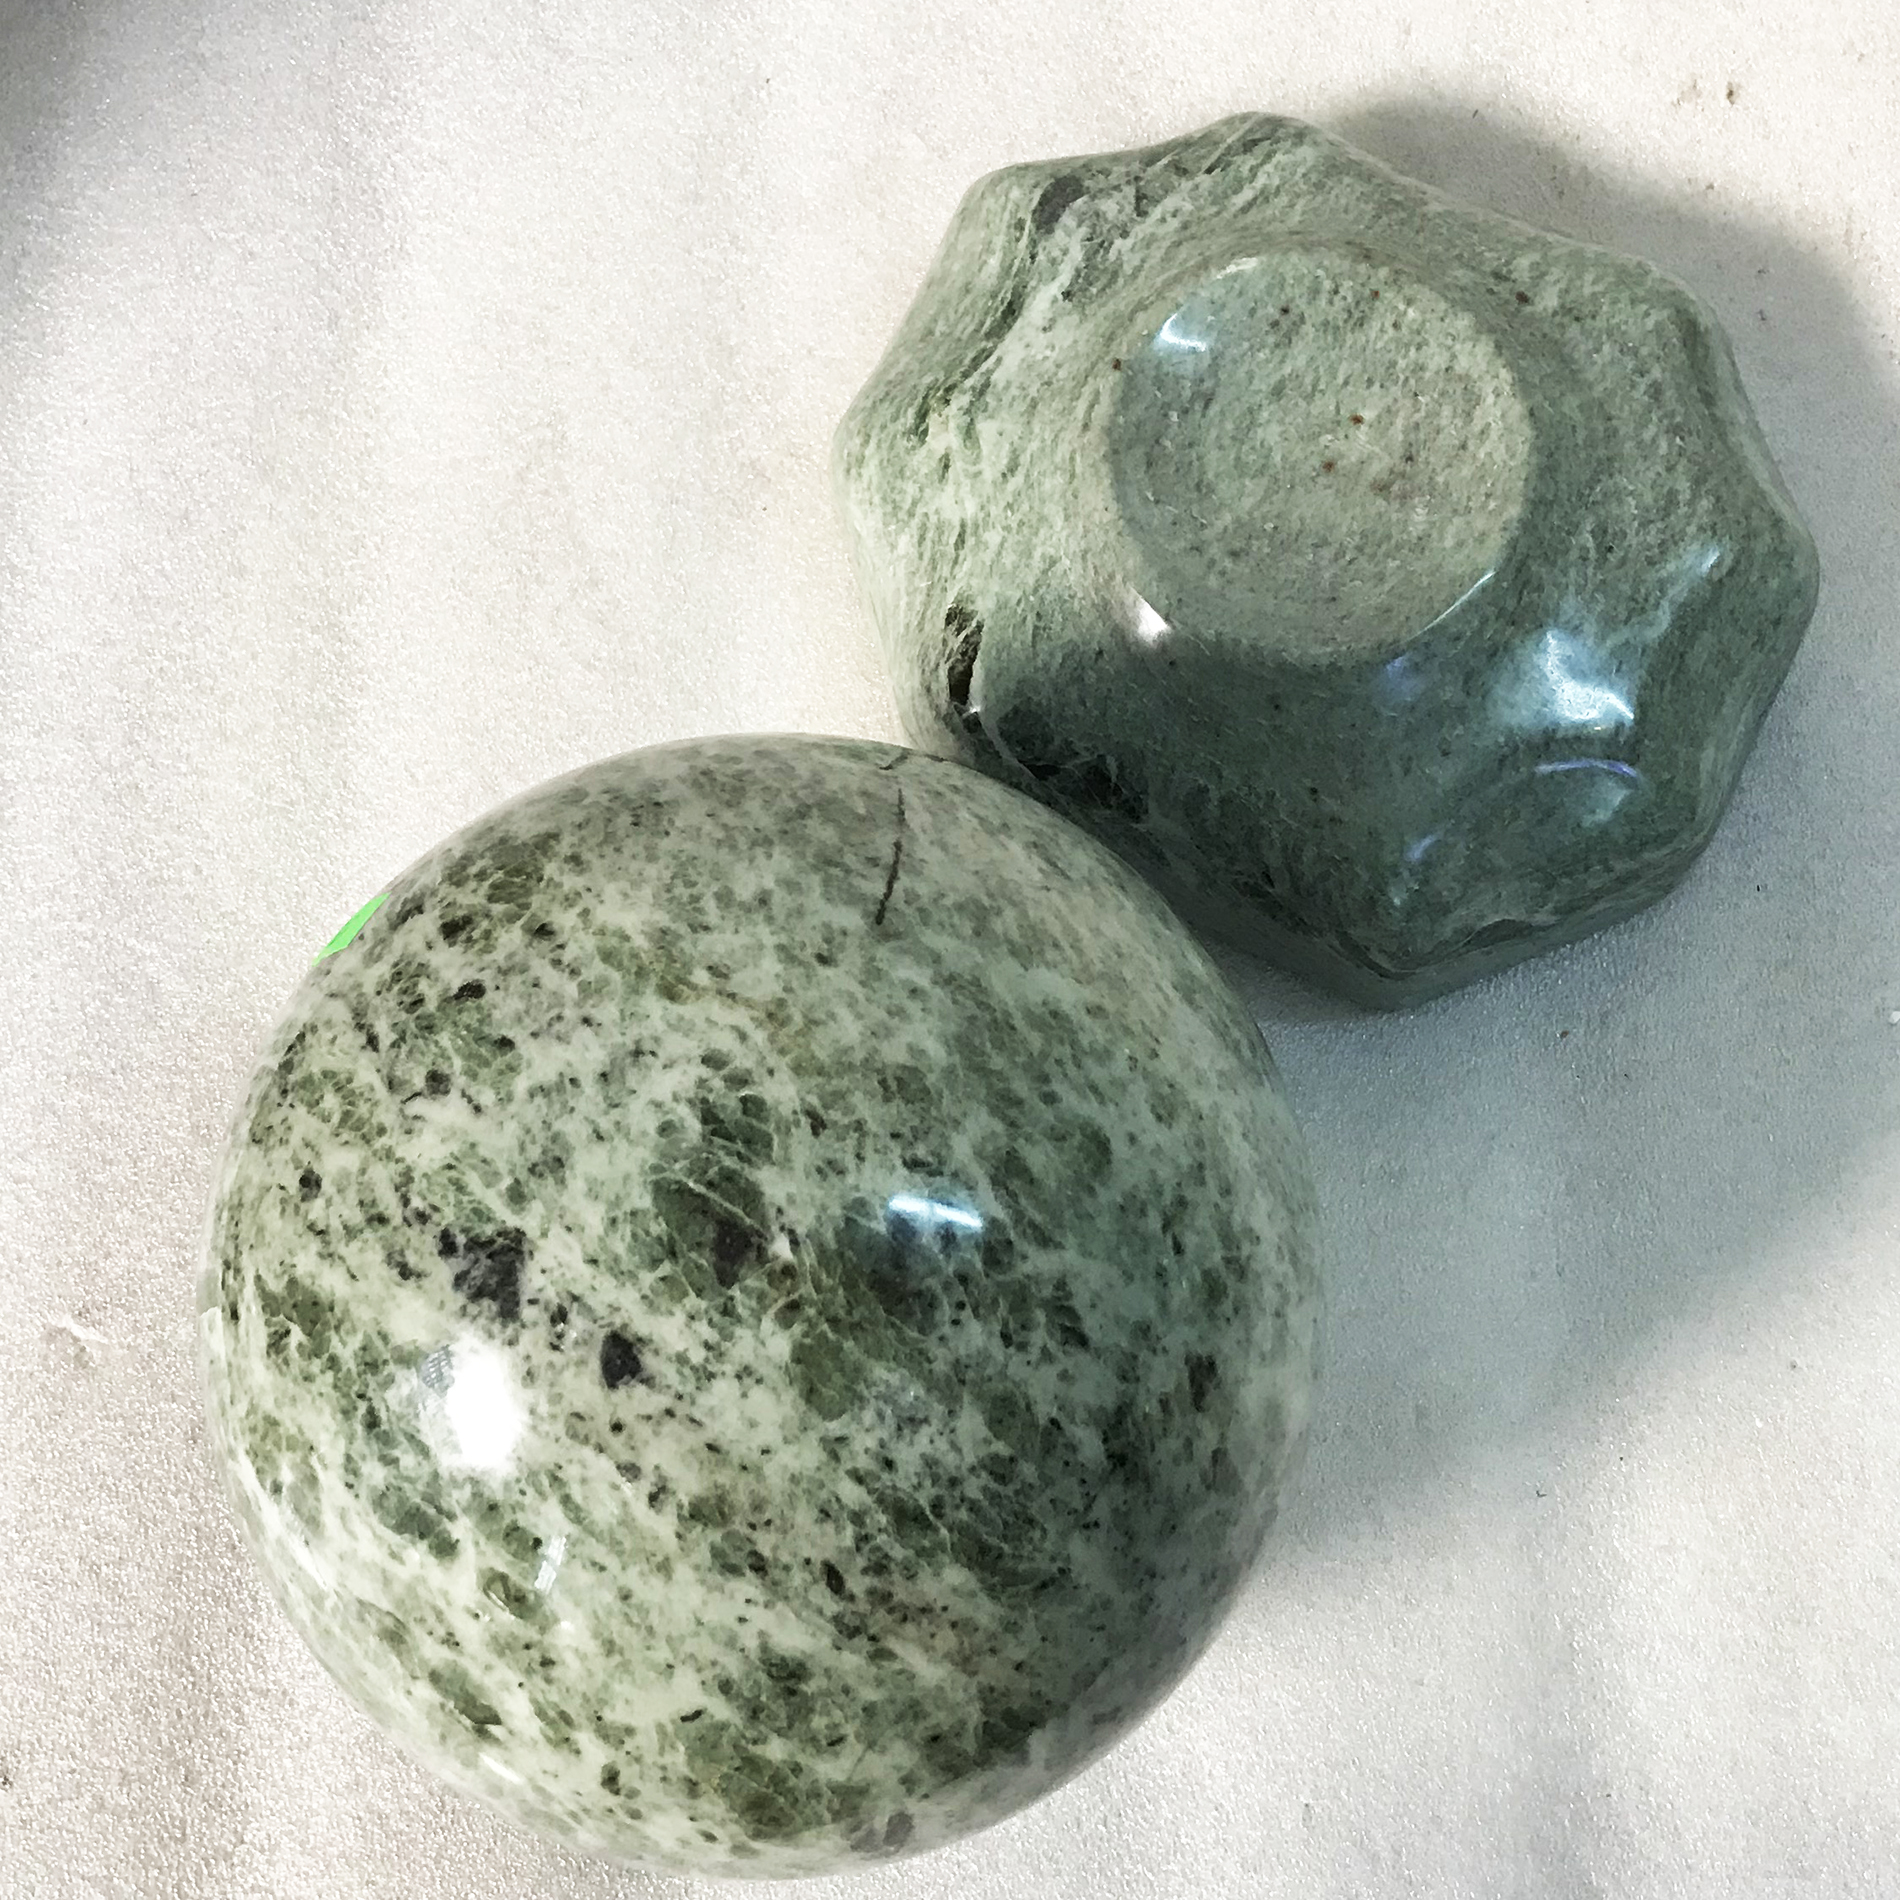 Trái cầu phong thủy màu xanh ngọc serpentine đường kính 20 cm nặng 15 kg đá tự nhiên cho người mệnh Hỏa và Mộc phongthuymenhhoa